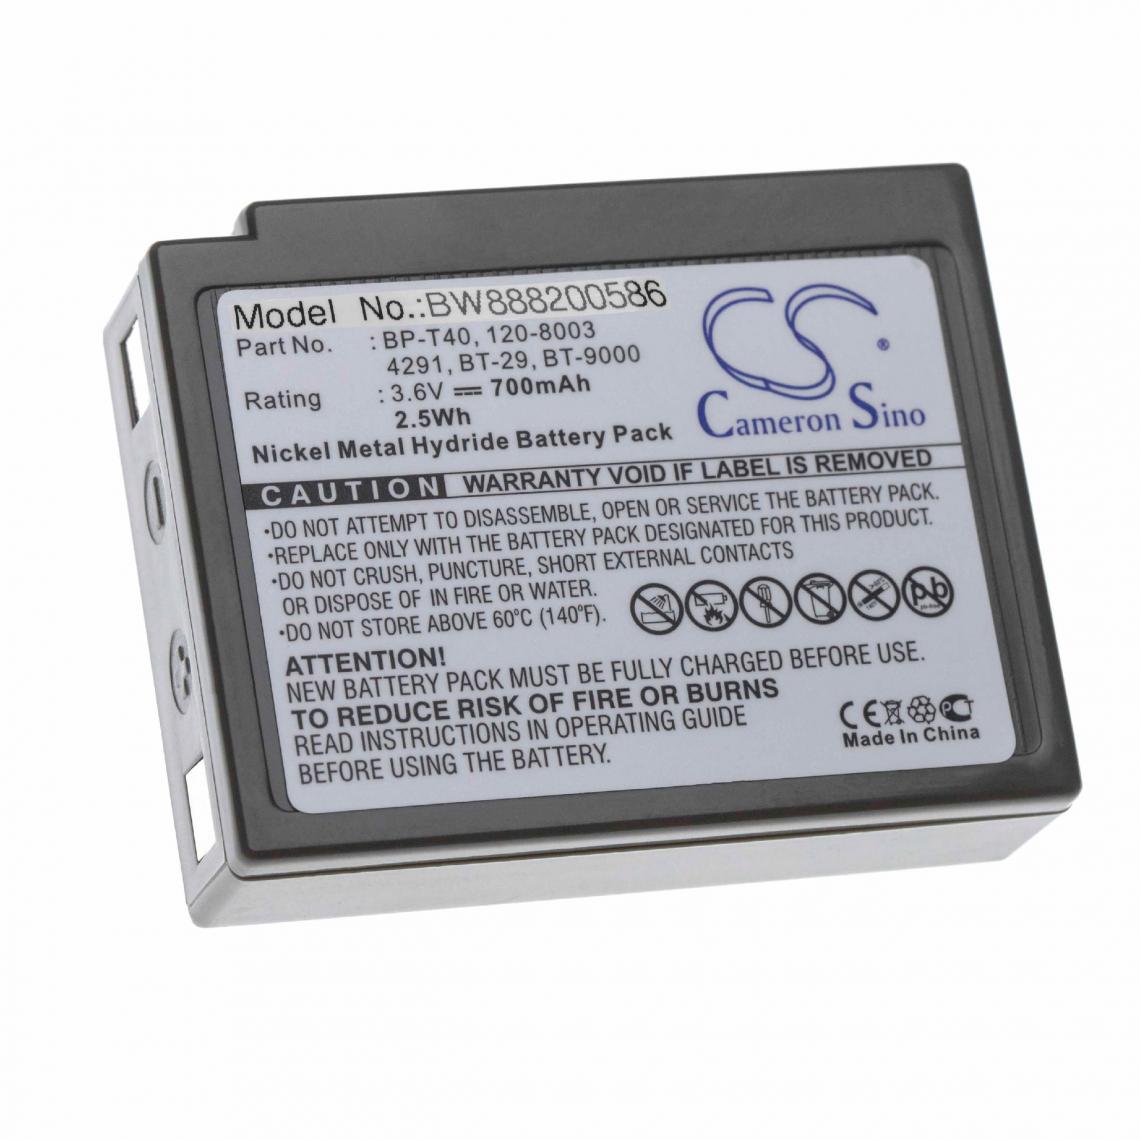 Vhbw - vhbw batterie gris compatible avec Sanyo GES-PCL01 combiné téléphonique téléphone fixe (700mAh, 3.6V, NiMH) - Batterie téléphone